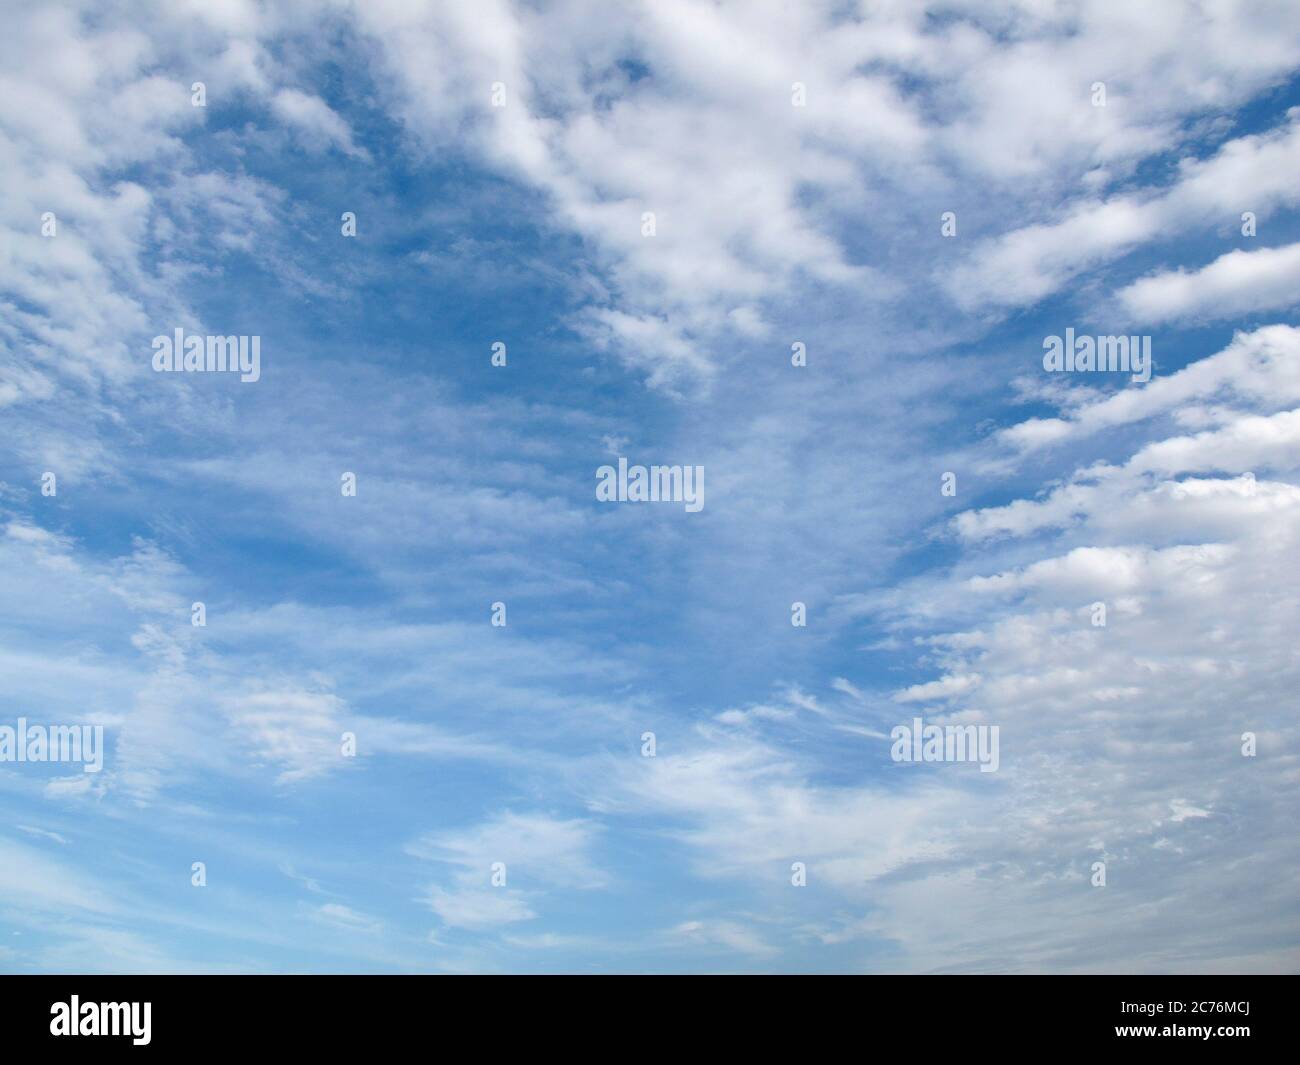 Nuvola a forma di cuore su cielo azzurro chiaro durante il giorno. Concetto di amore romantico Foto Stock